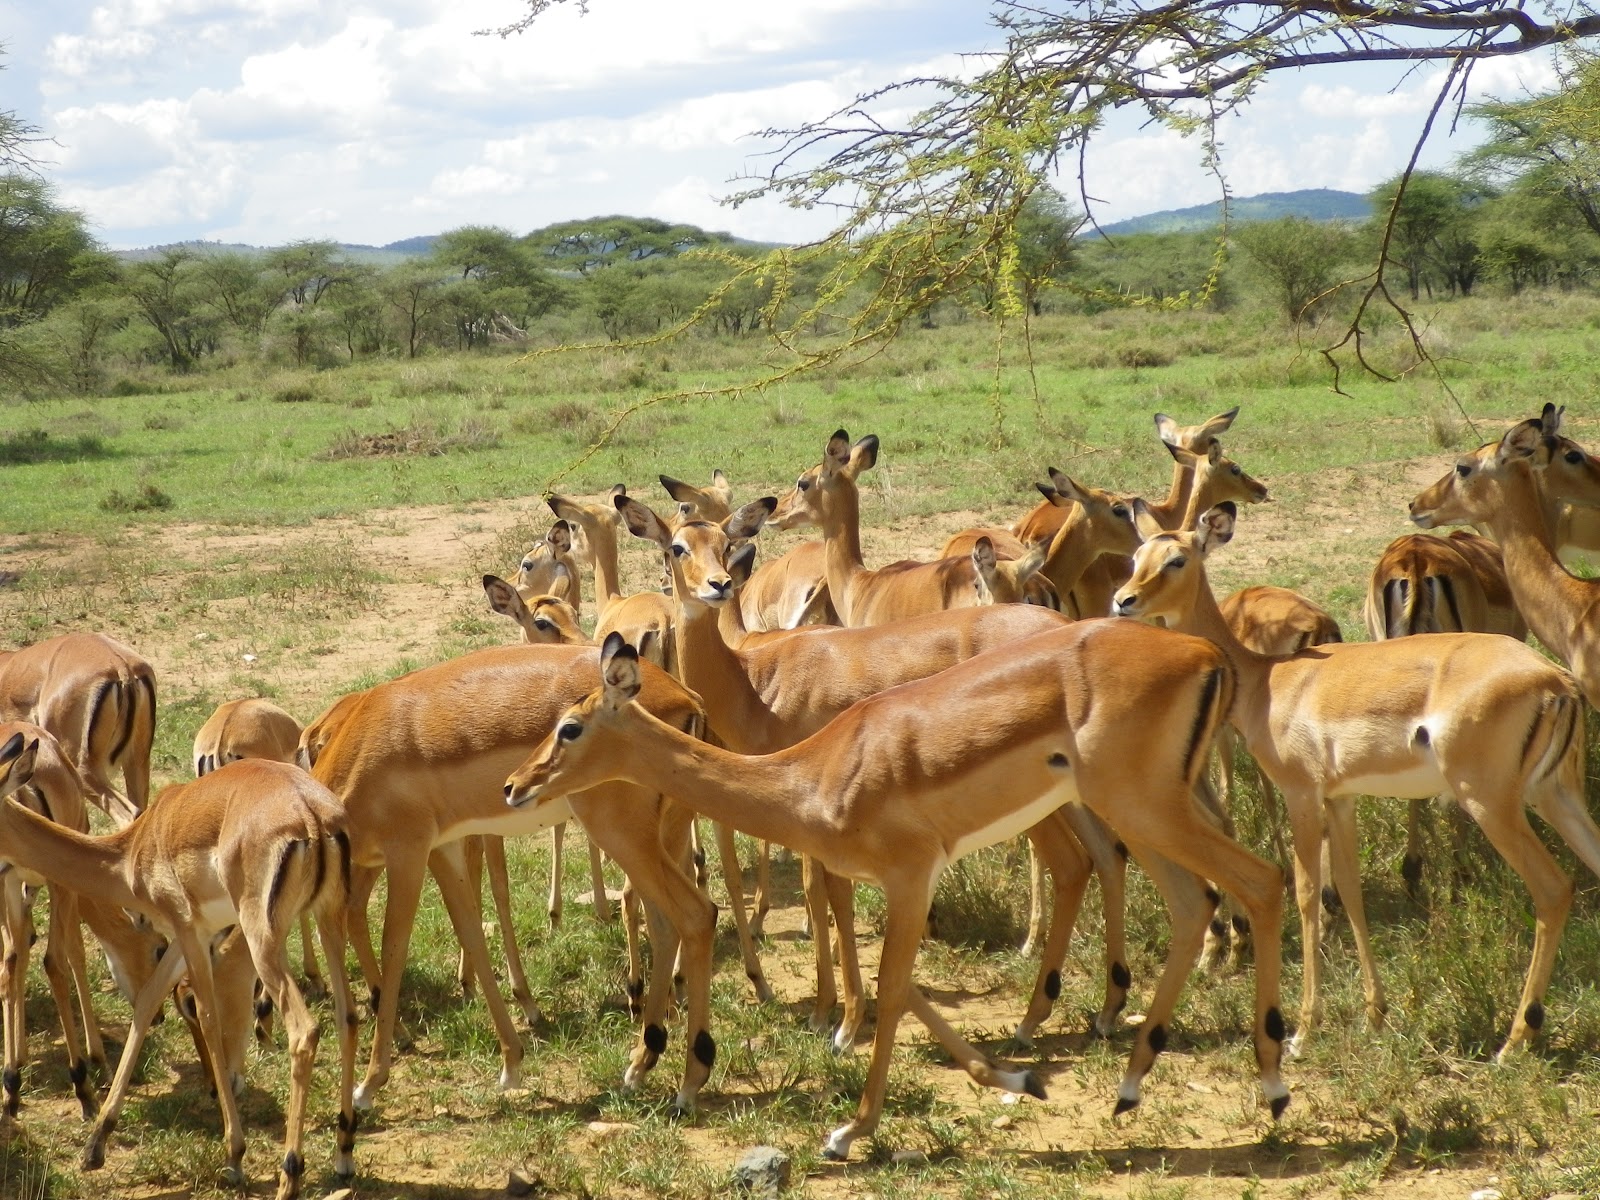 meaning of safari njema in swahili